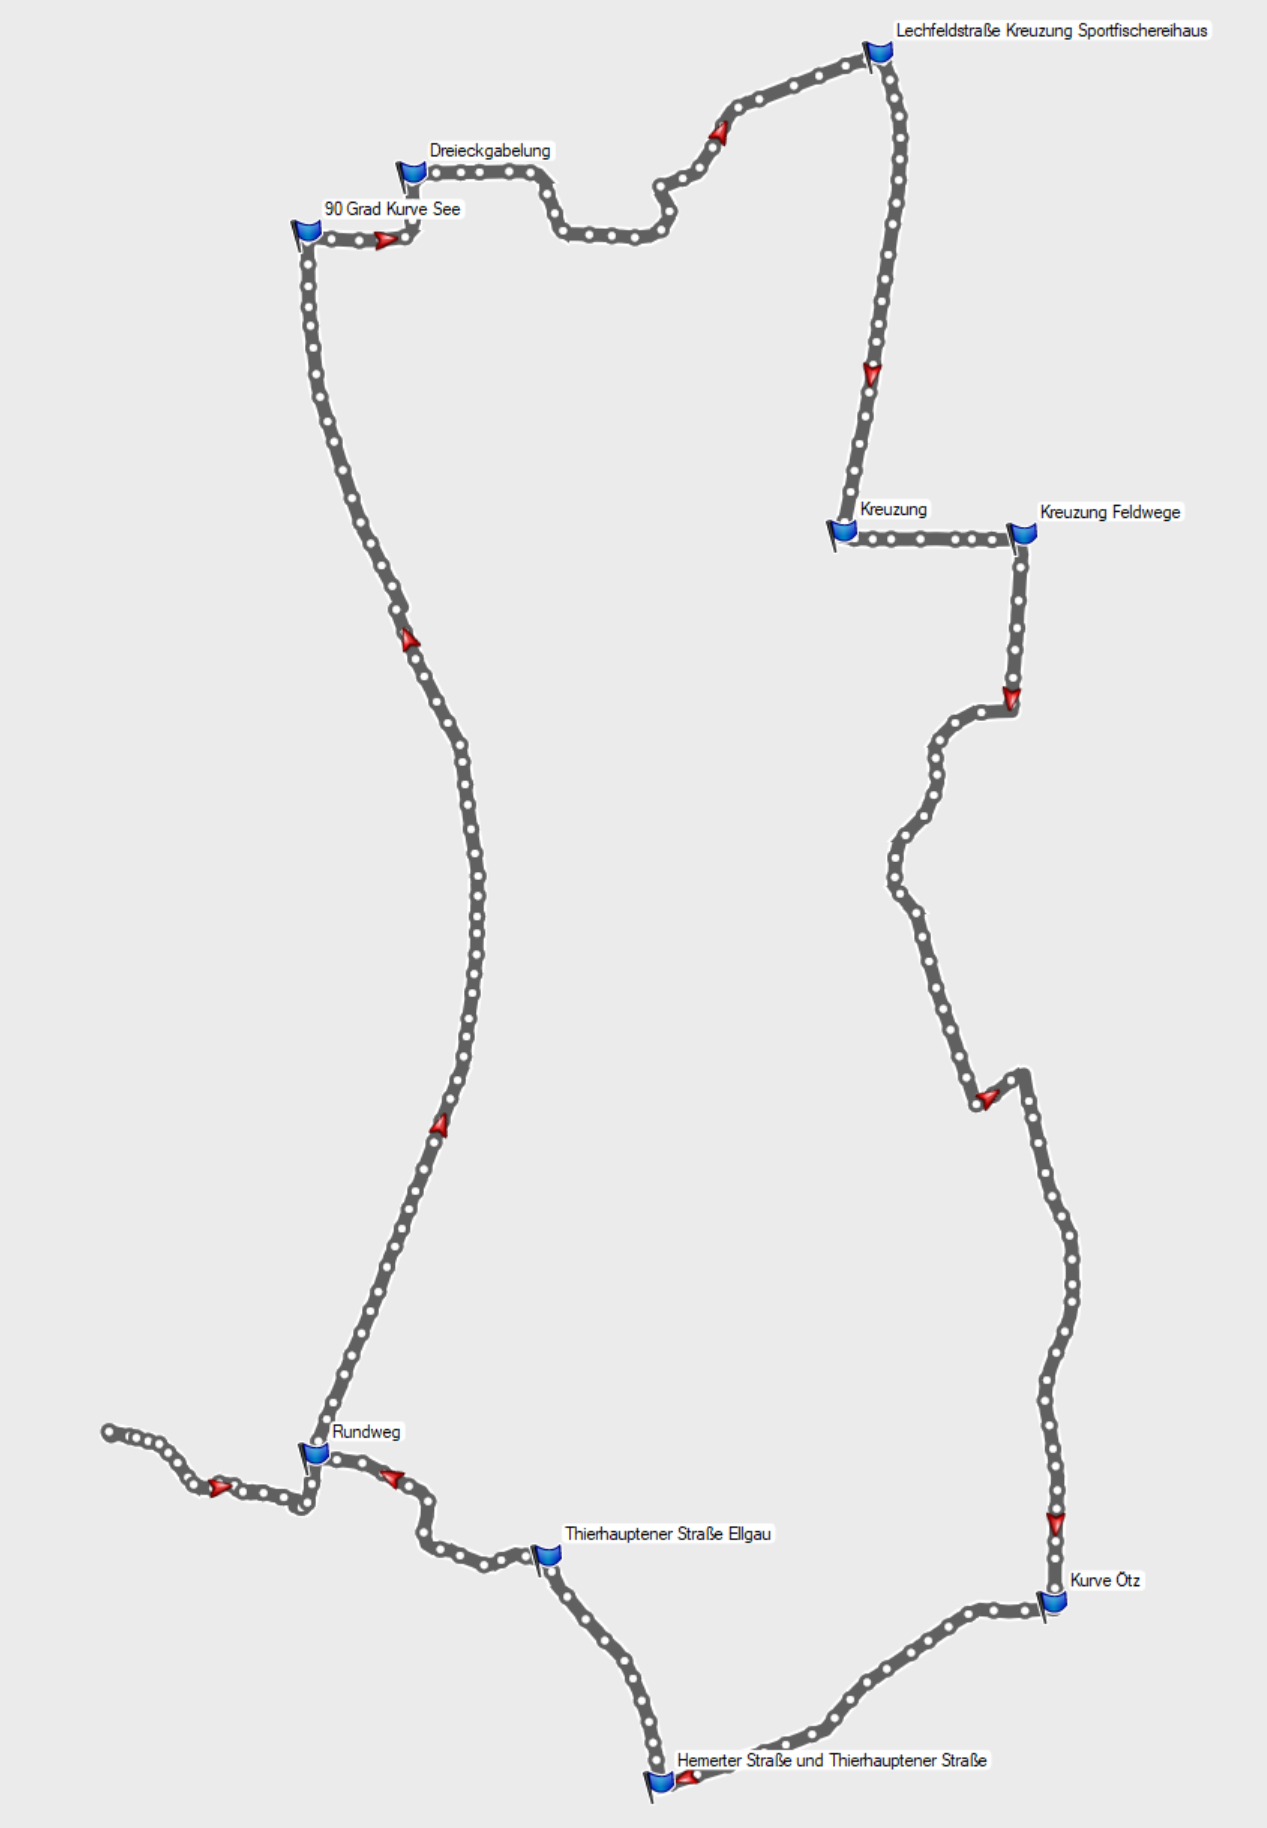 Route Münster-Lech-Rundweg